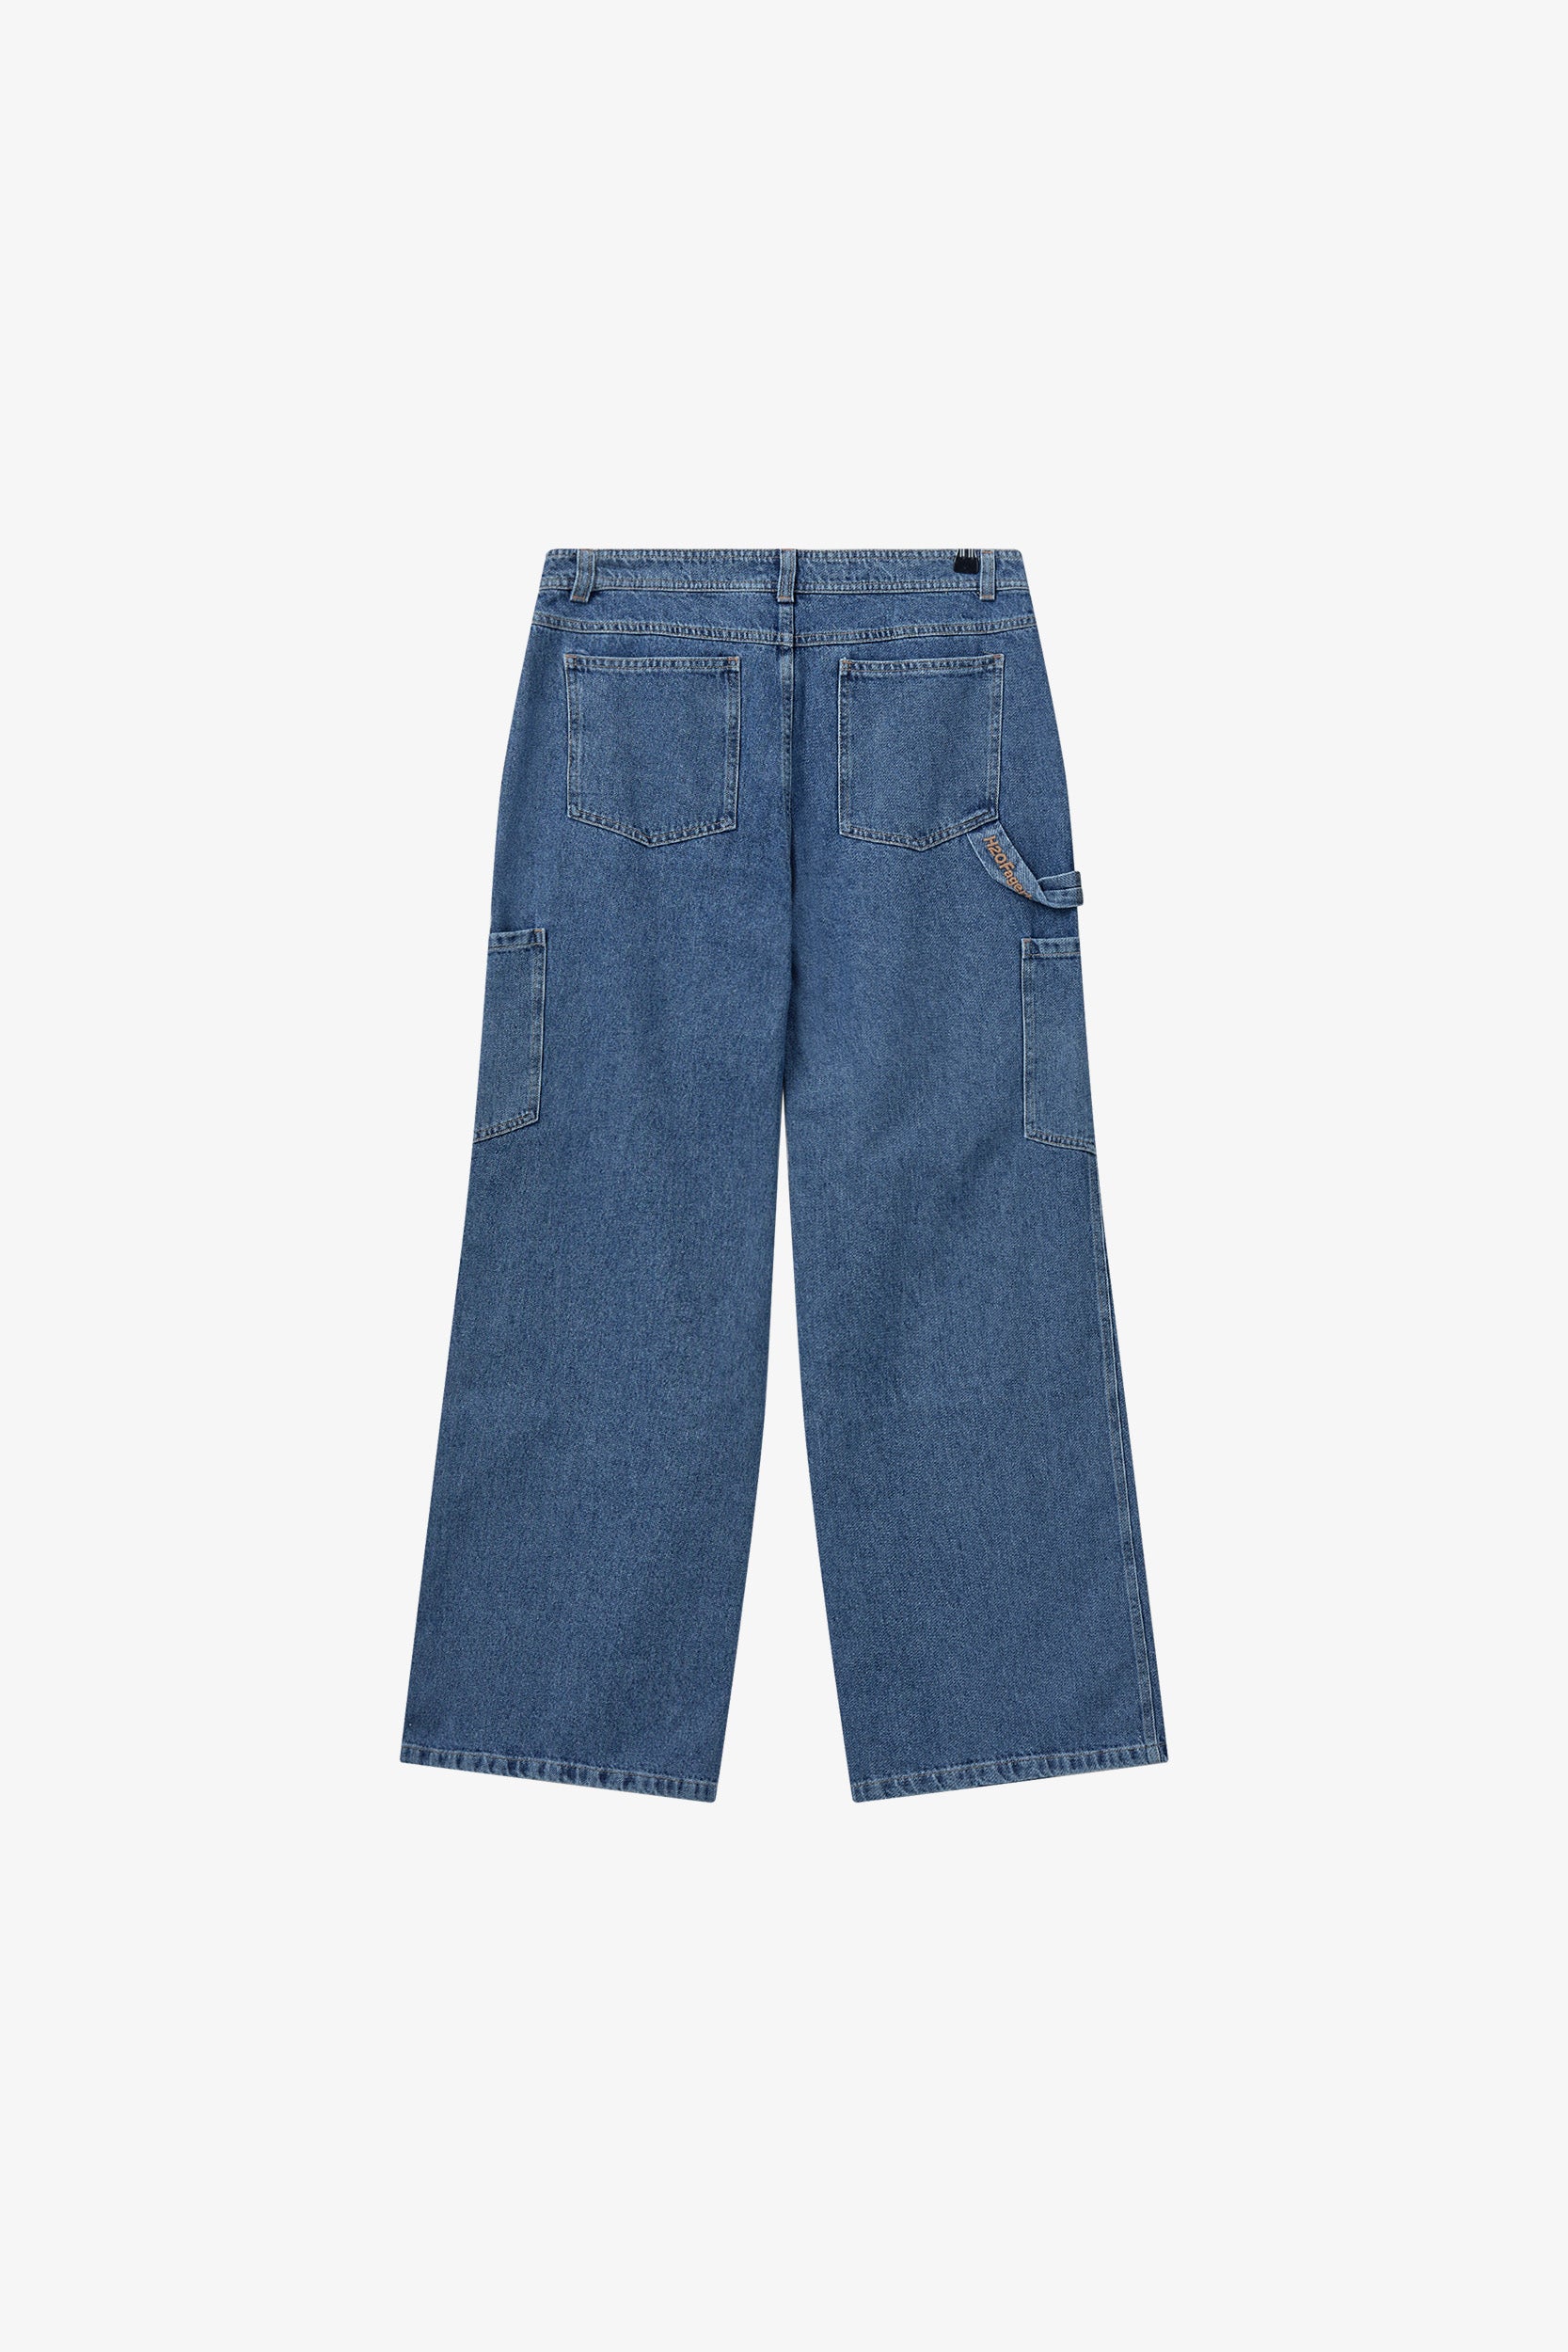 Only Bad Jeans - Vintage Blue Denim